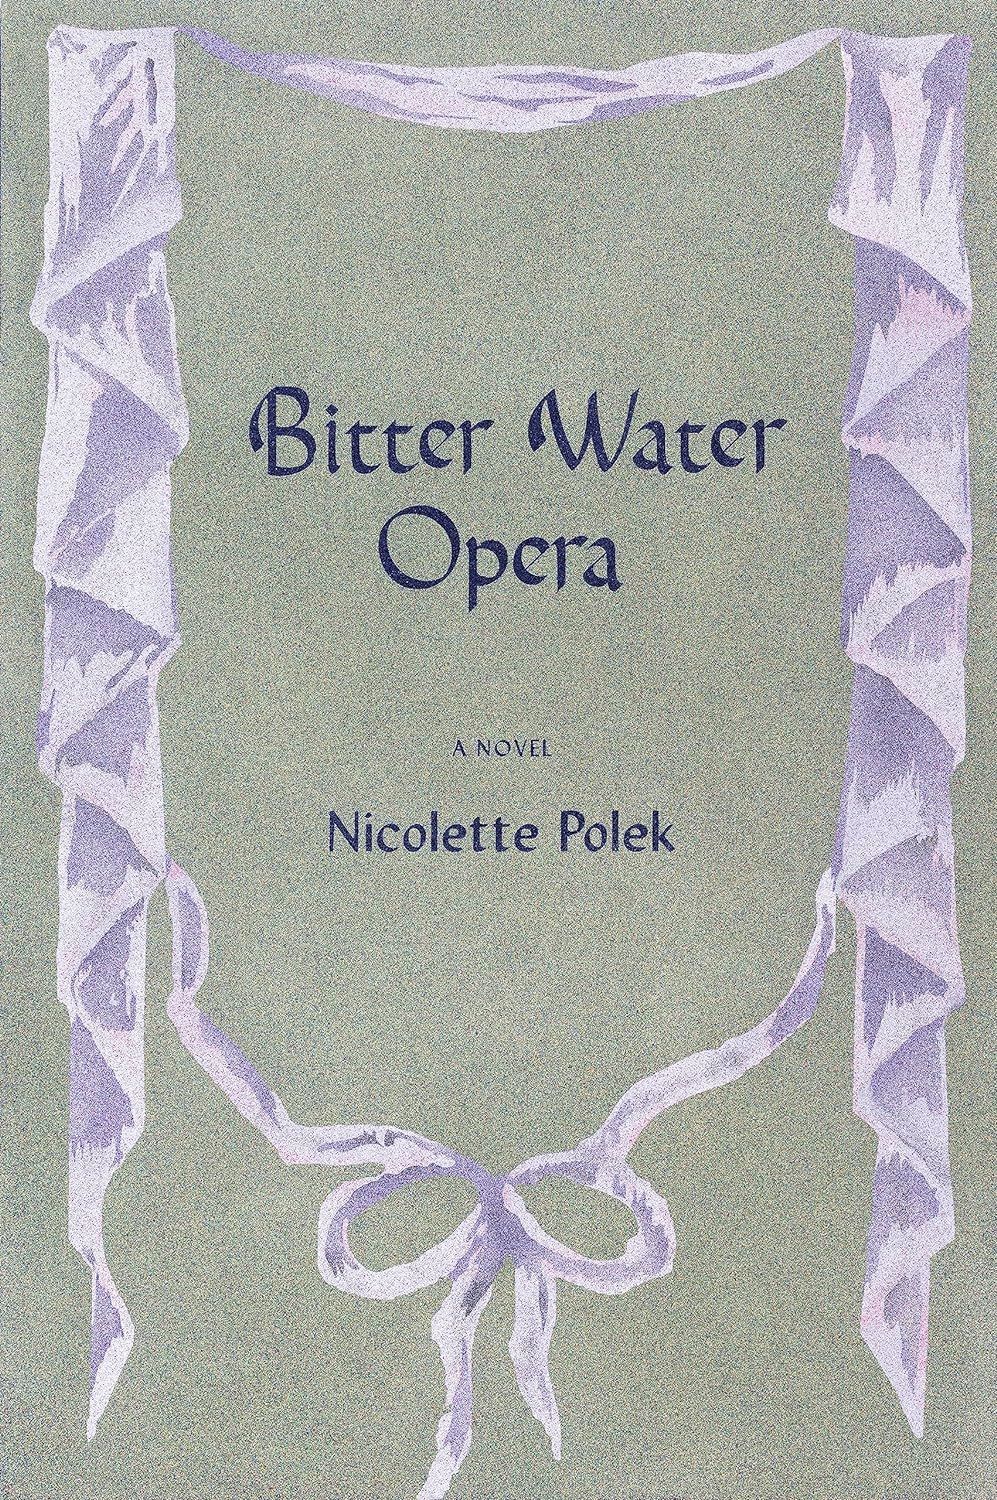 The Empty Spotlight: On Nicolette Polek’s “Bitter Water Opera”